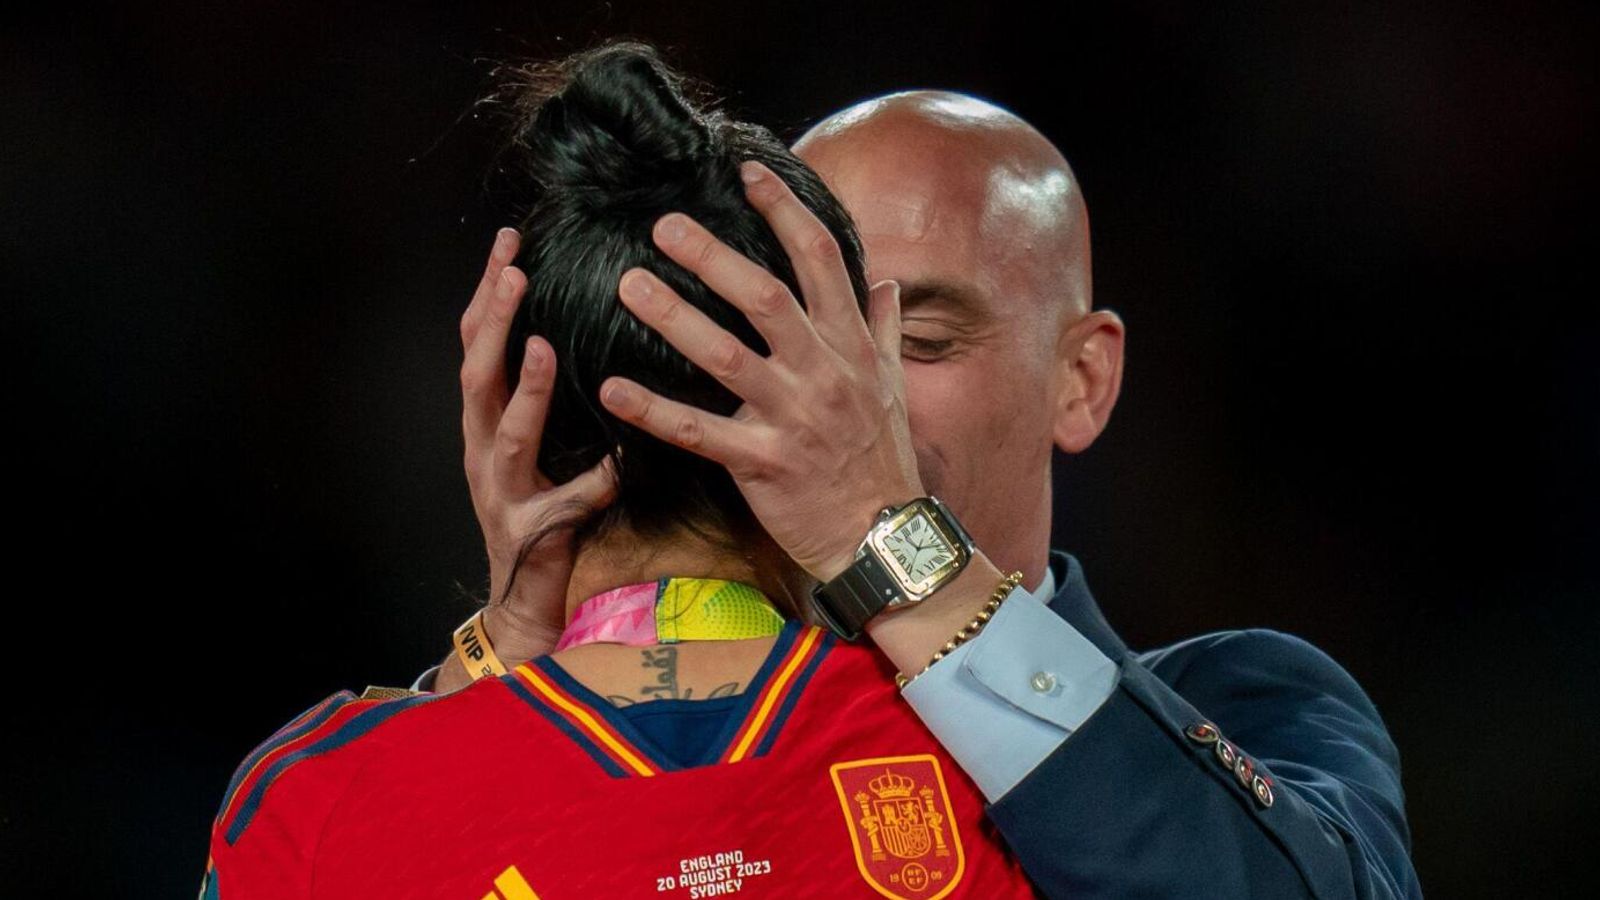 تقدمت لاعبة كرة القدم الإسبانية جيني هيرموسو بشكوى بسبب قبلة غير مرغوب فيها خلال كأس العالم للسيدات.  اخبار العالم